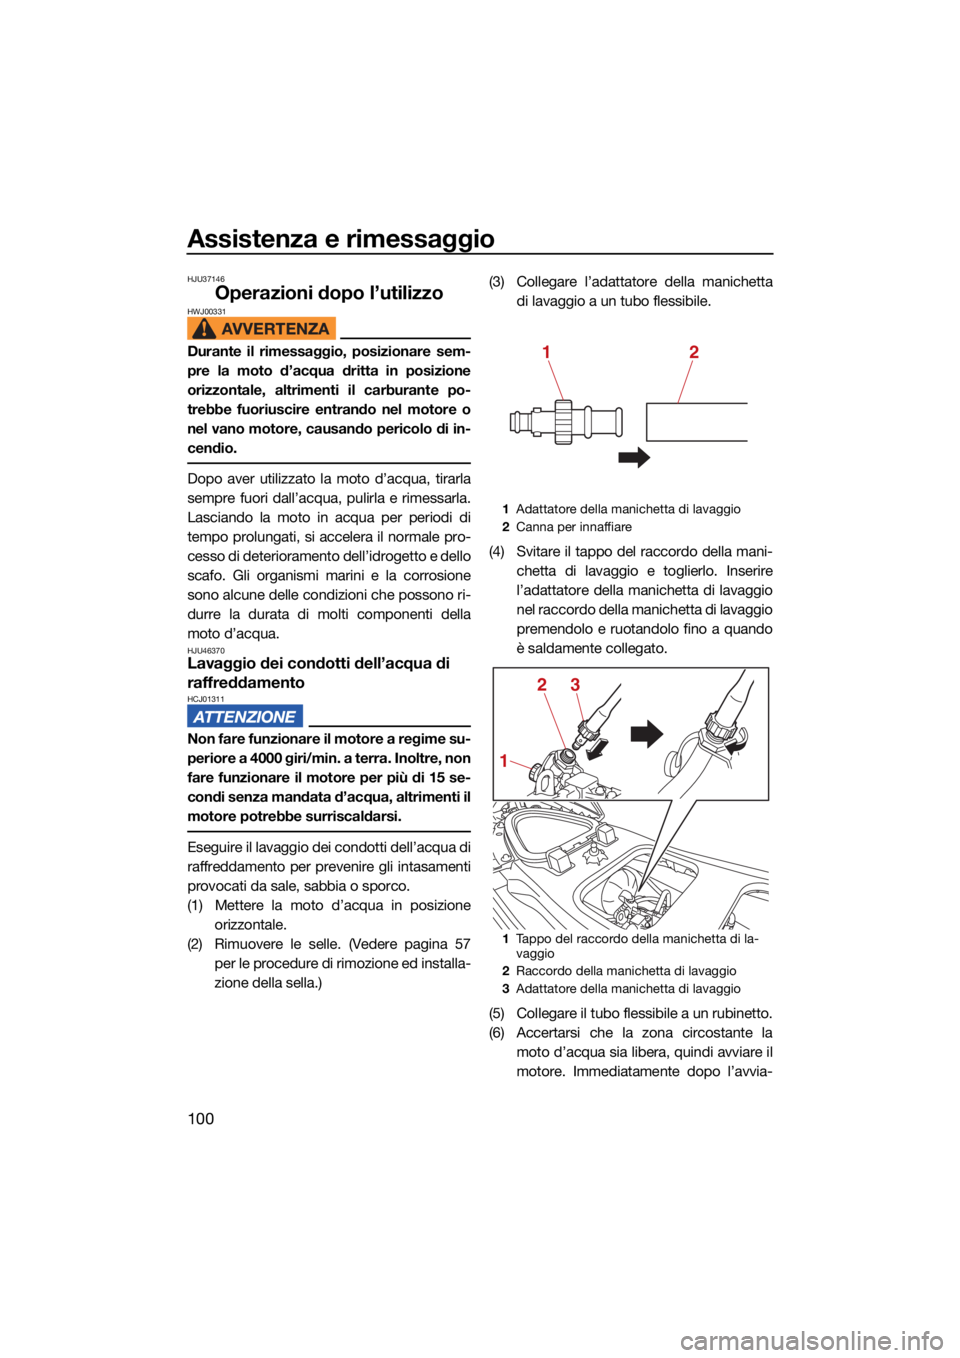 YAMAHA VX 2021  Manuale duso (in Italian) Assistenza e rimessaggio
100
HJU37146
Operazioni dopo l’utilizzoHWJ00331
Durante il rimessaggio, posizionare sem-
pre la moto d’acqua dritta in posizione
orizzontale, altrimenti il carburante po-
